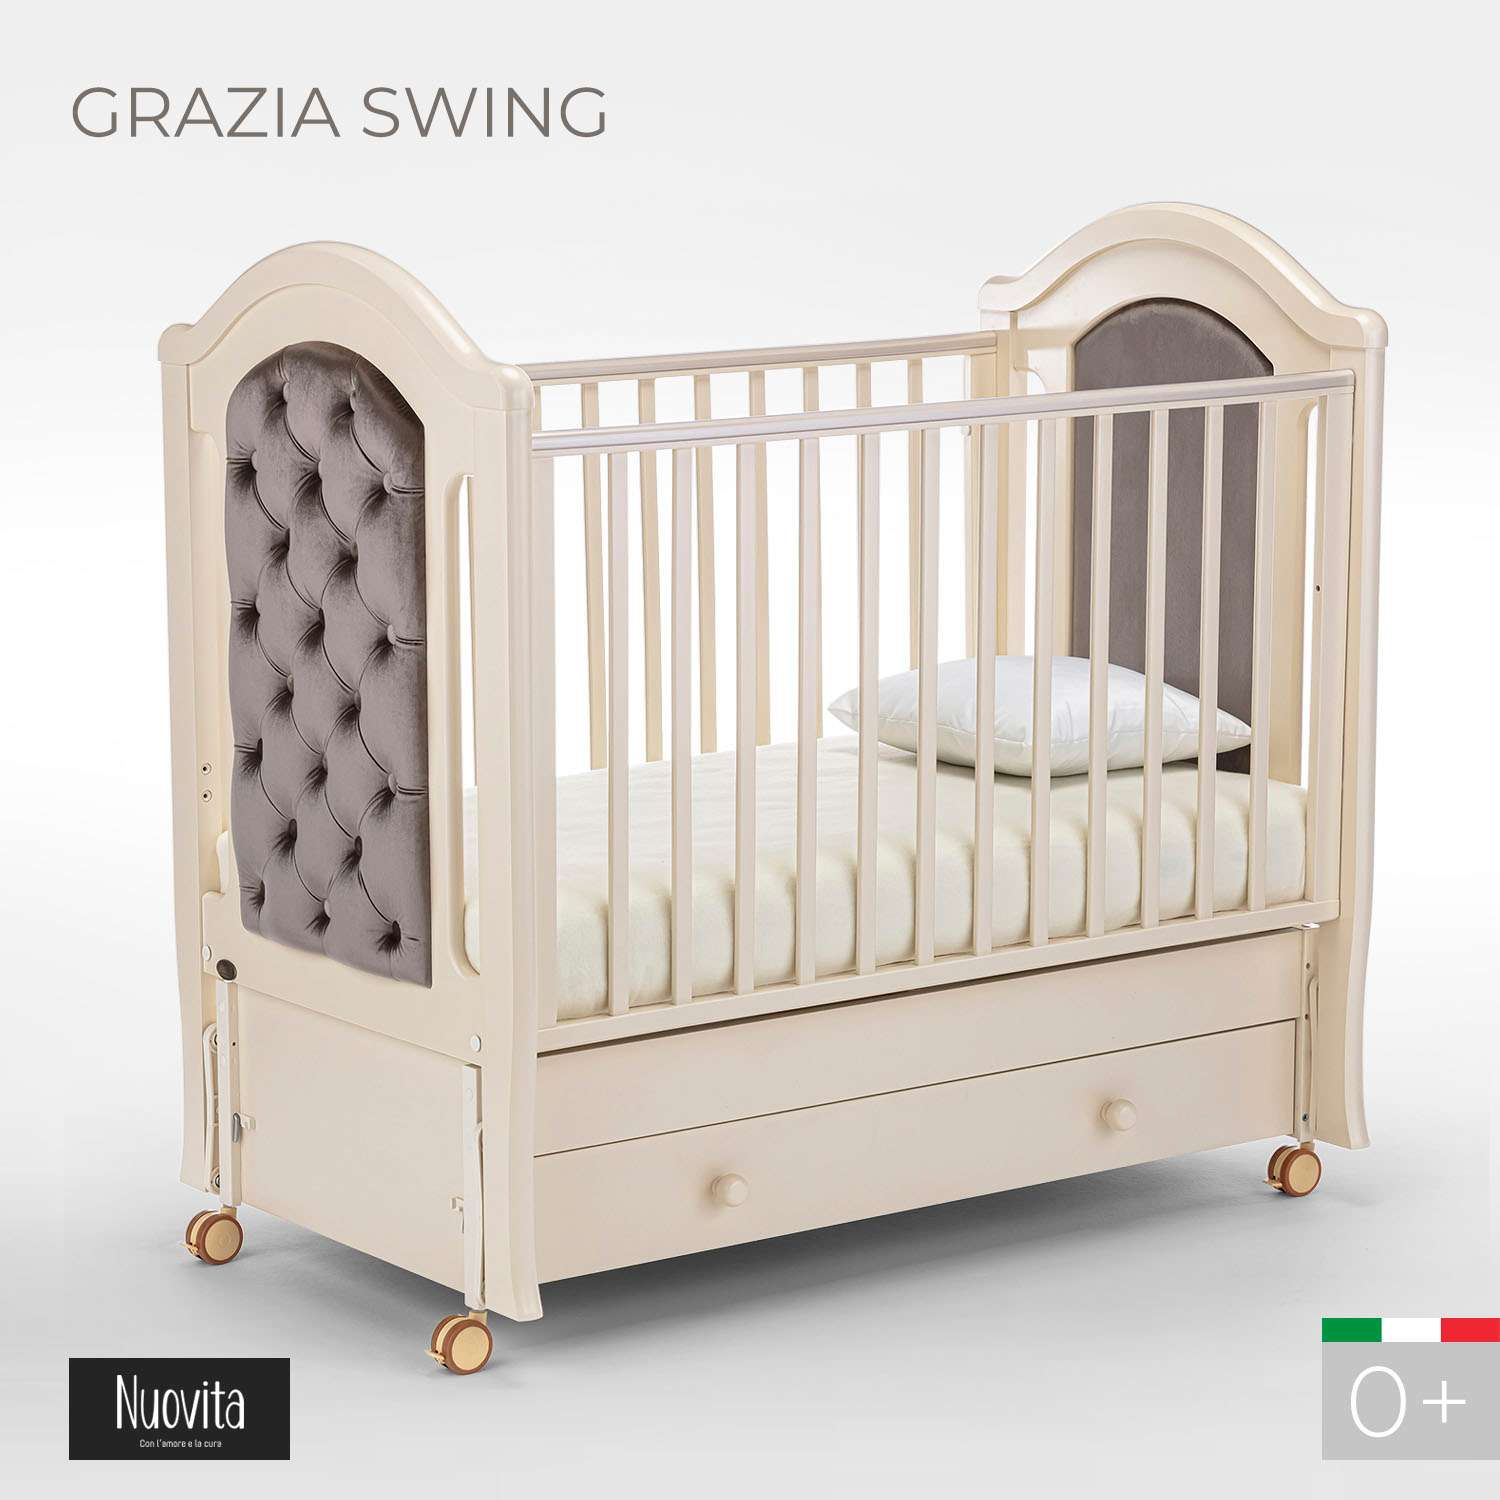 Детская кроватка Nuovita Grazia Swing прямоугольная, продольный маятник (слоновая кость) - фото 2